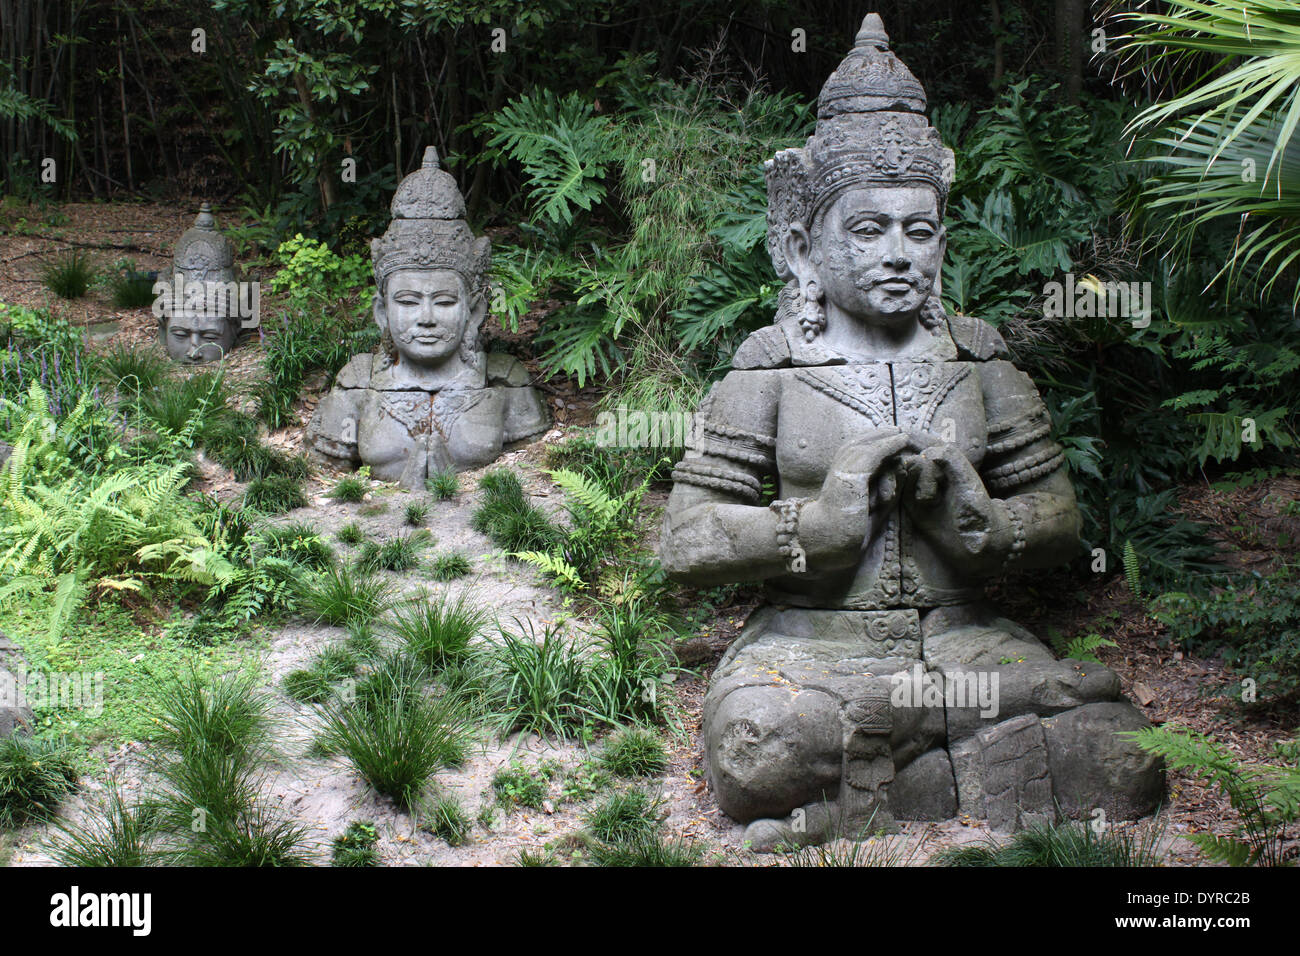 Sculptures en pierre de dieux hindous à moitié enfoui dans la masse du pavillon indien, Disney World, Orlando, Floride, USA Banque D'Images